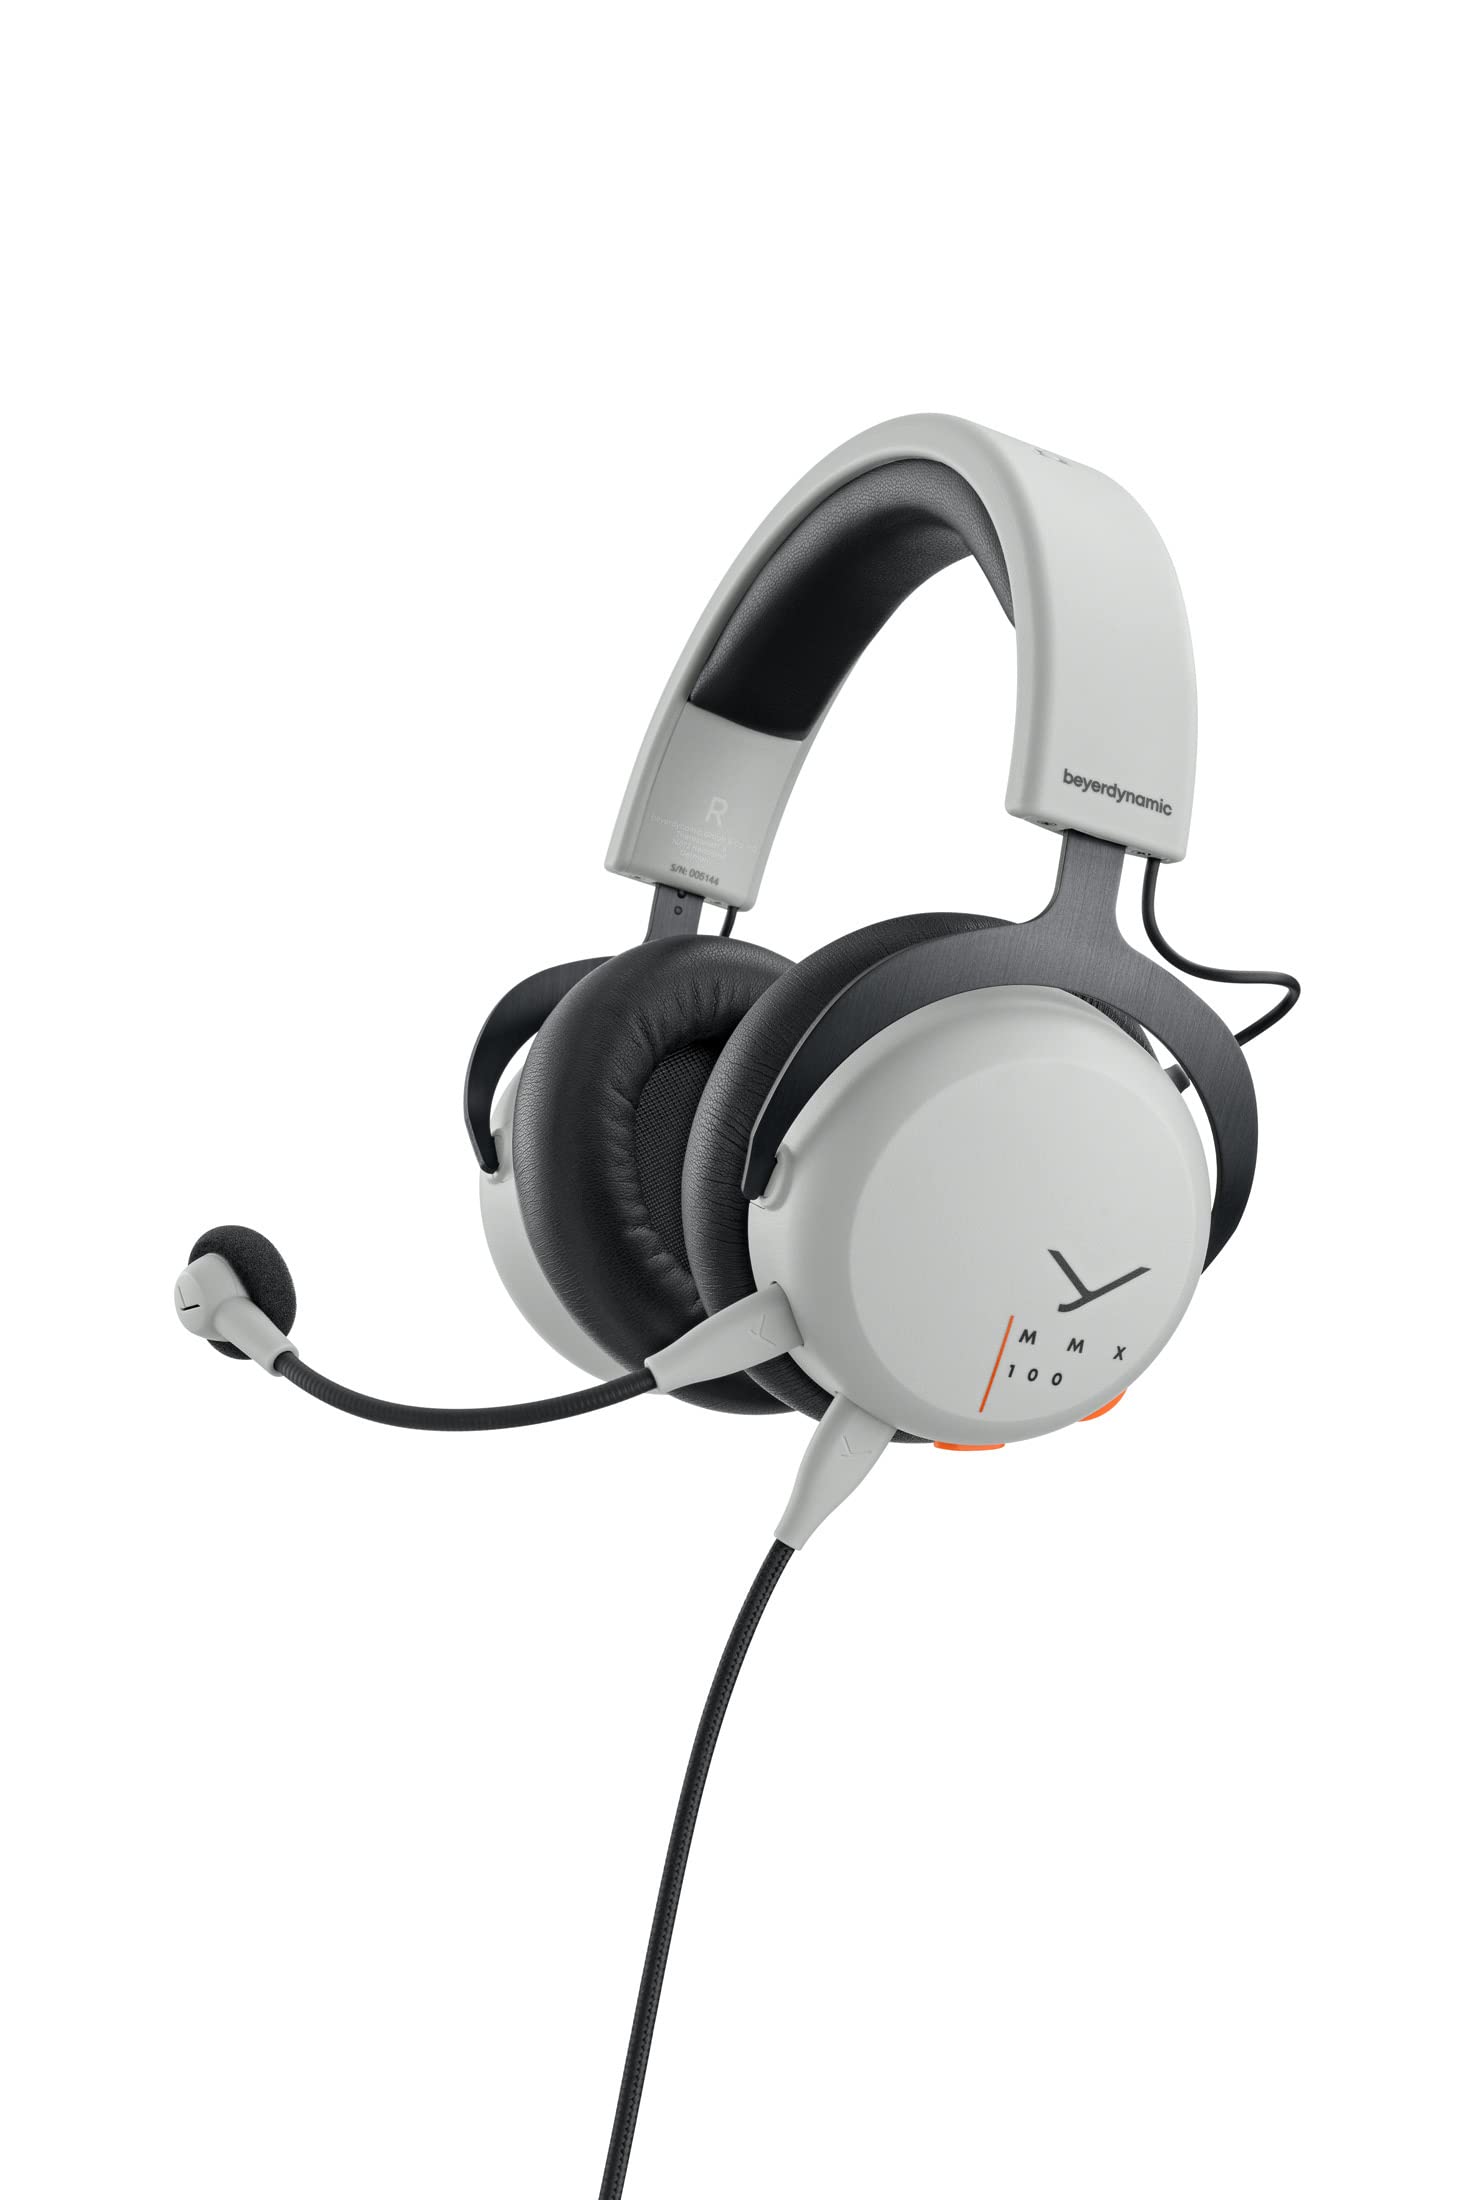 beyerdynamic MMX 100 geschlossenes Over-Ear Gaming-Headset in grau mit META Voice Mikrofon, exzellenter Sound für alle Gaming Devices